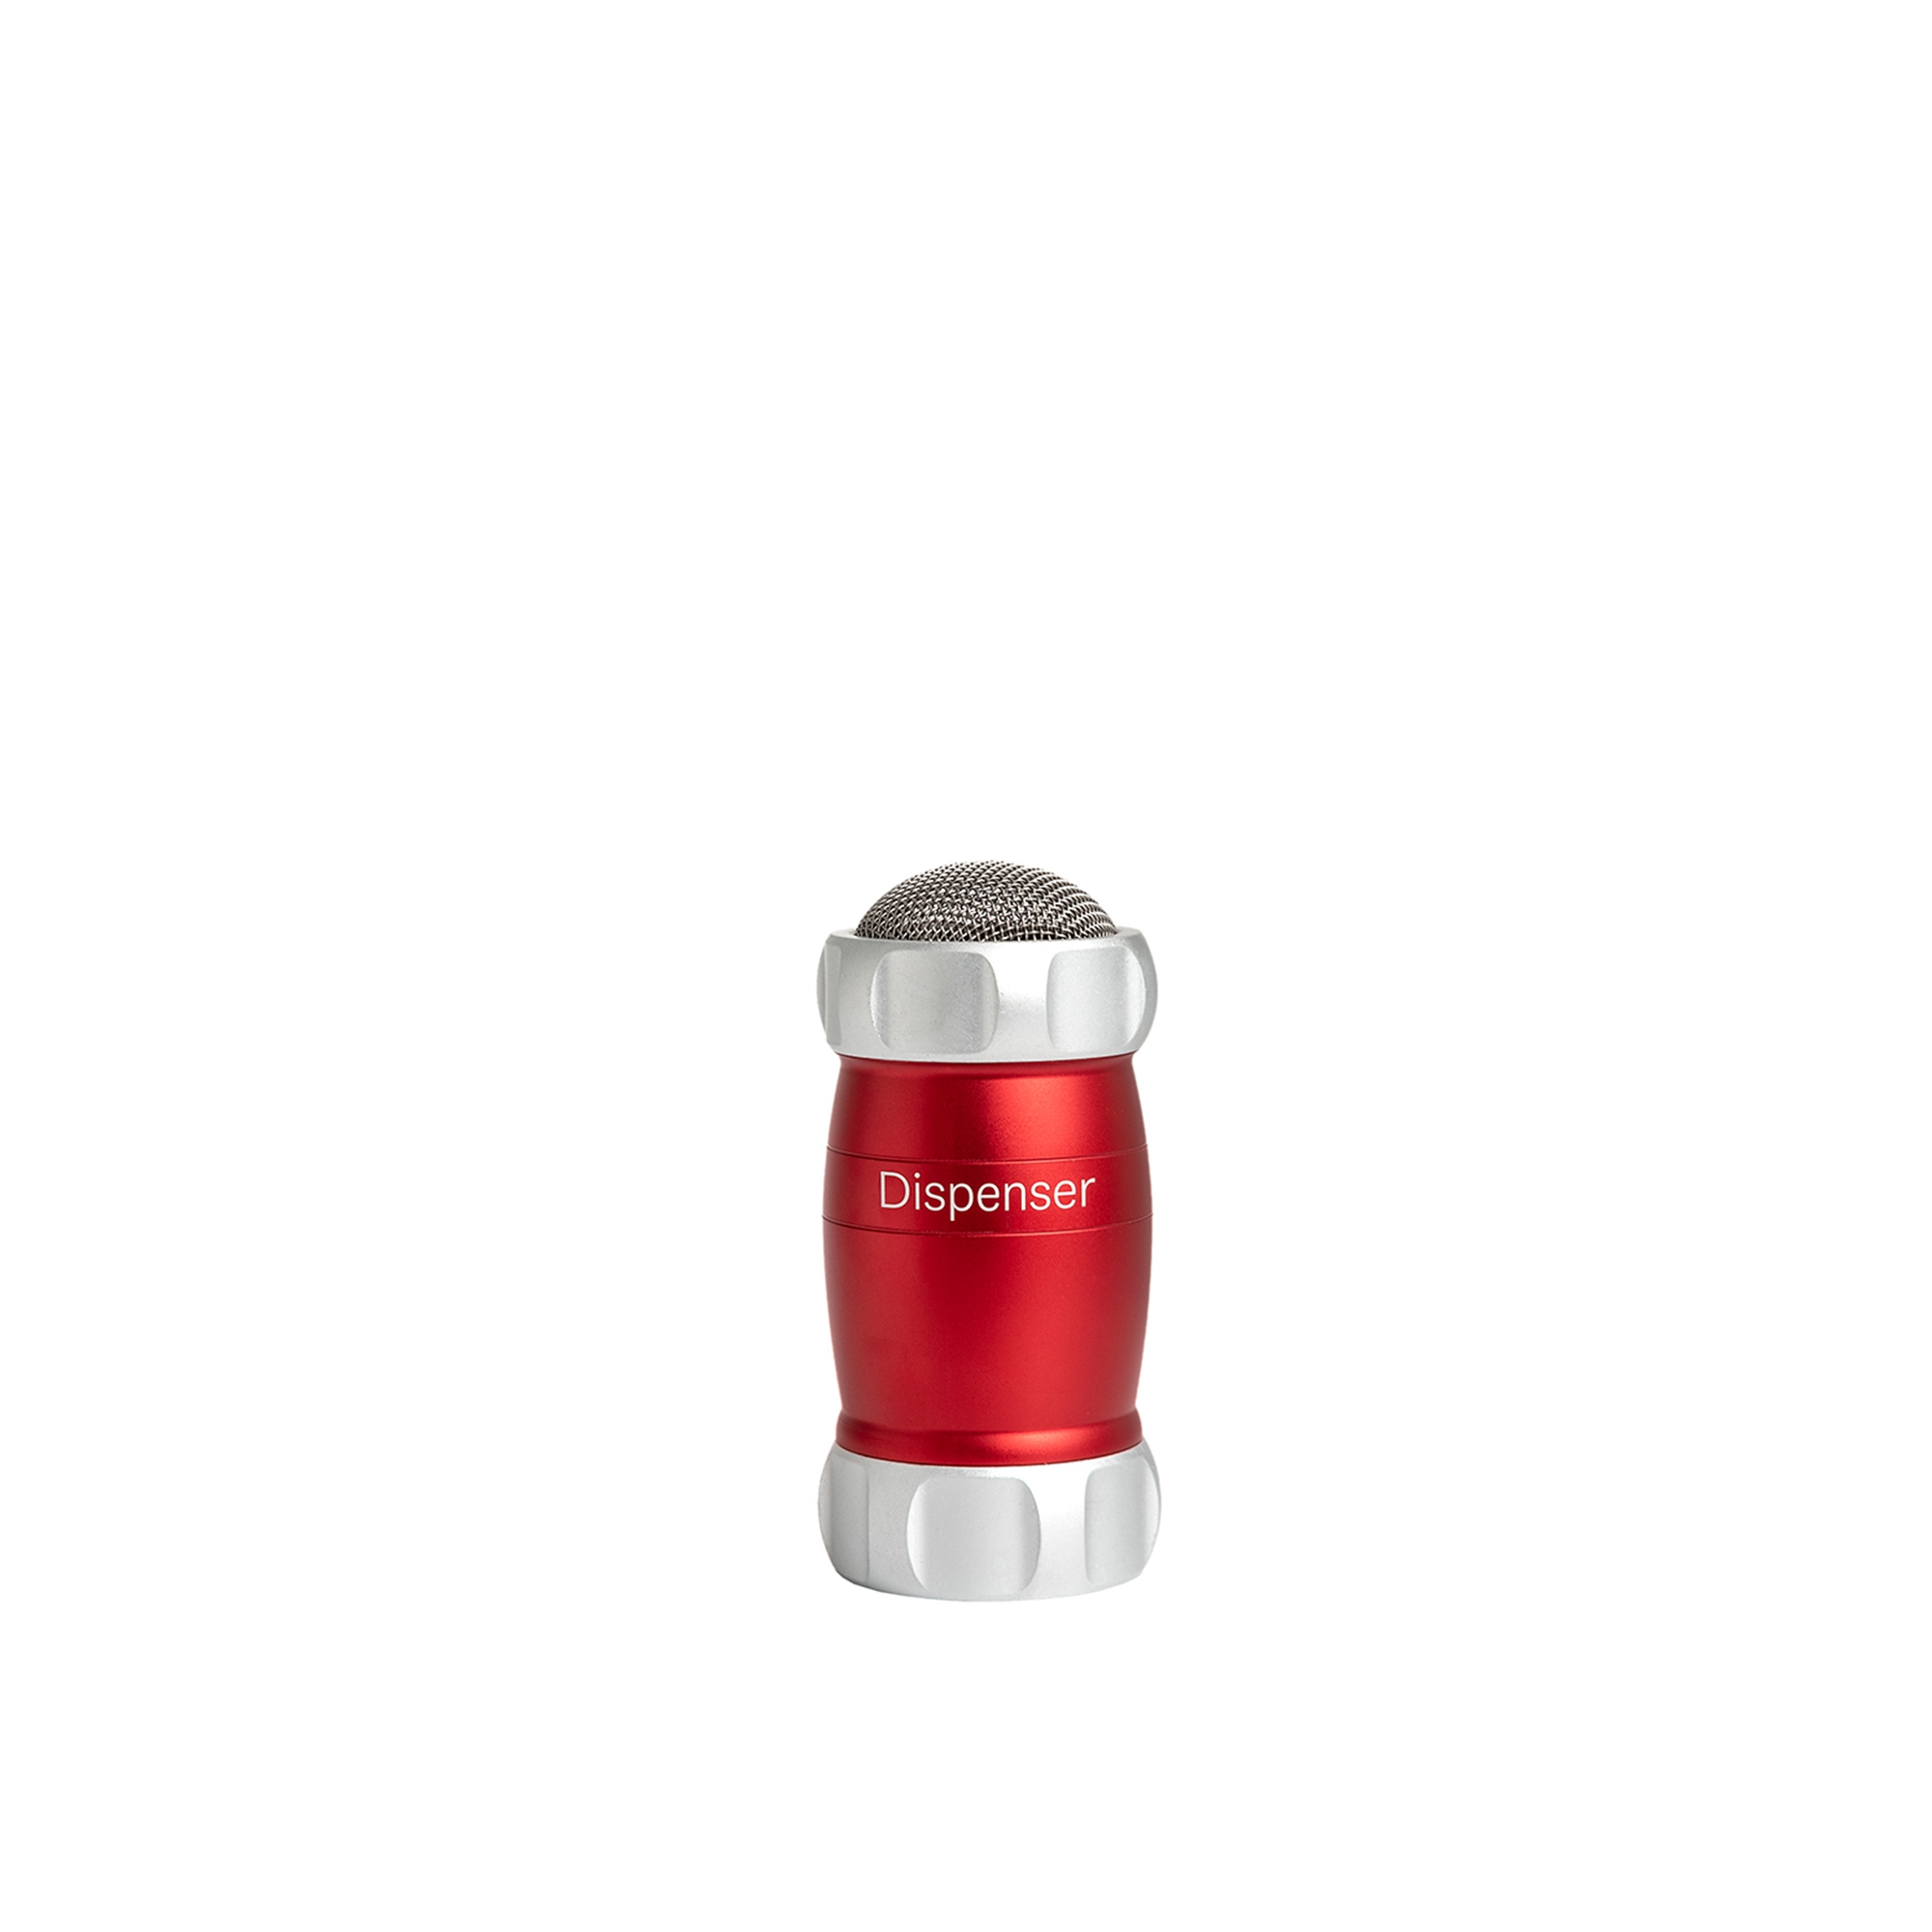 Marcato - Dispenser Design - Red